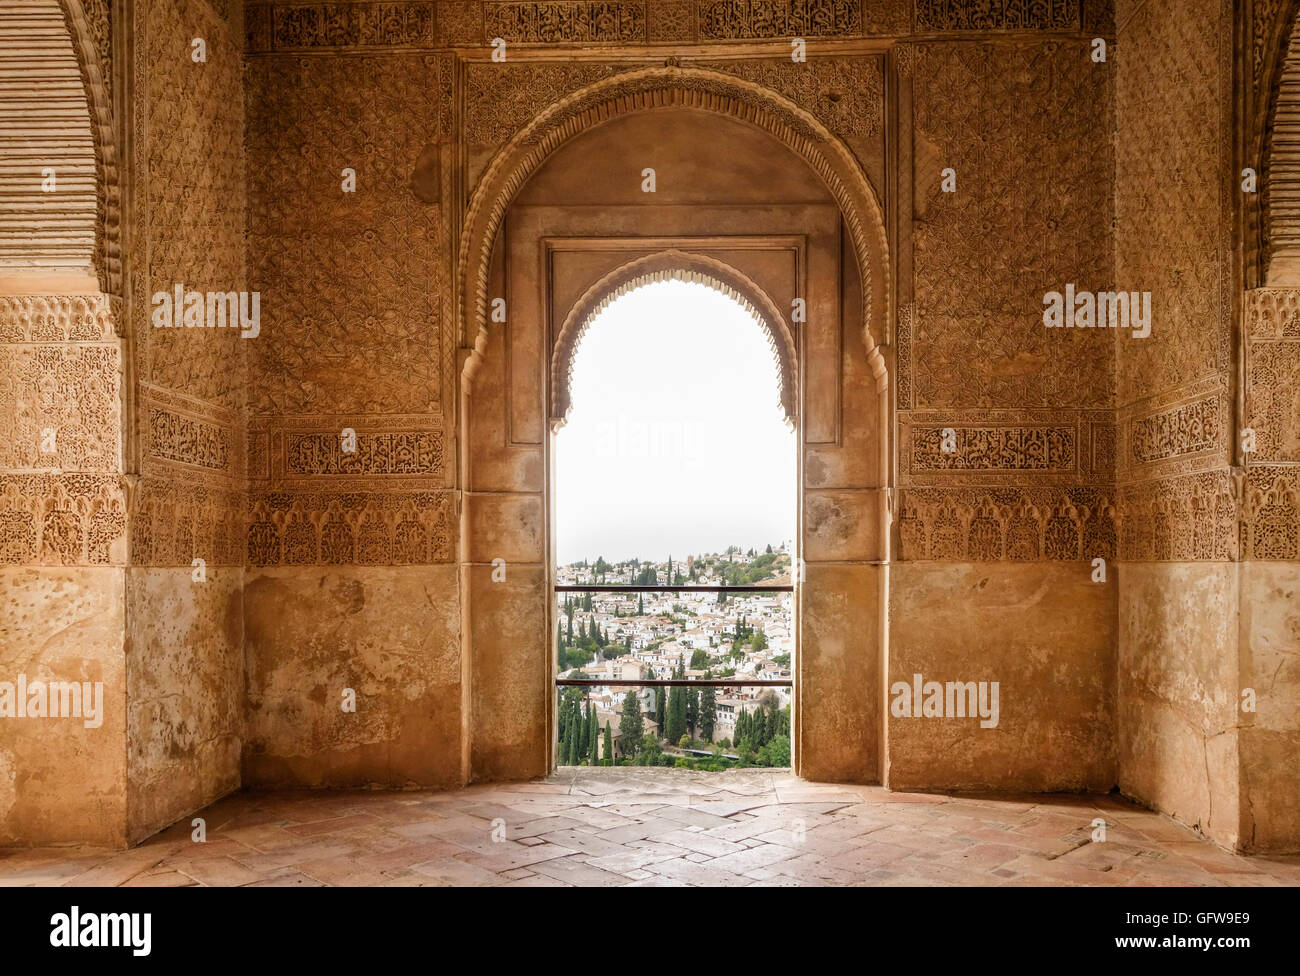 Maurische verzierte Tür, Palacio de Generalife, Alhambra, Sommer Palast der Nasriden Emire, Könige, Granada, Andalusien, Spanien. Stockfoto